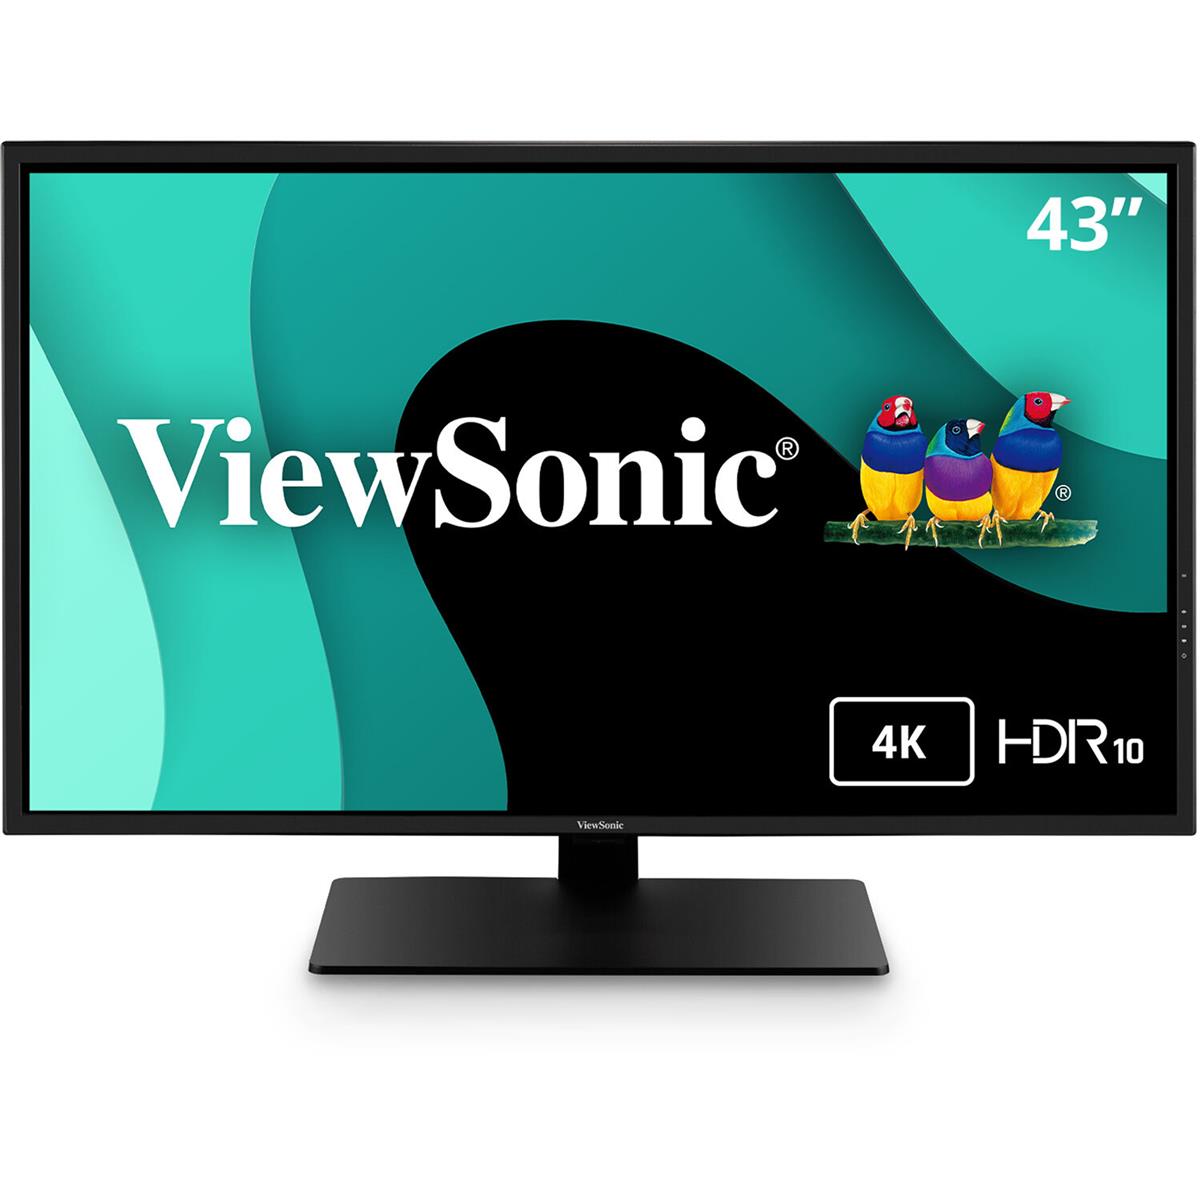 ViewSonic VX4381-4K 43-дюймовый 16:9 4K UHD MVA светодиодный монитор со встроенными динамиками